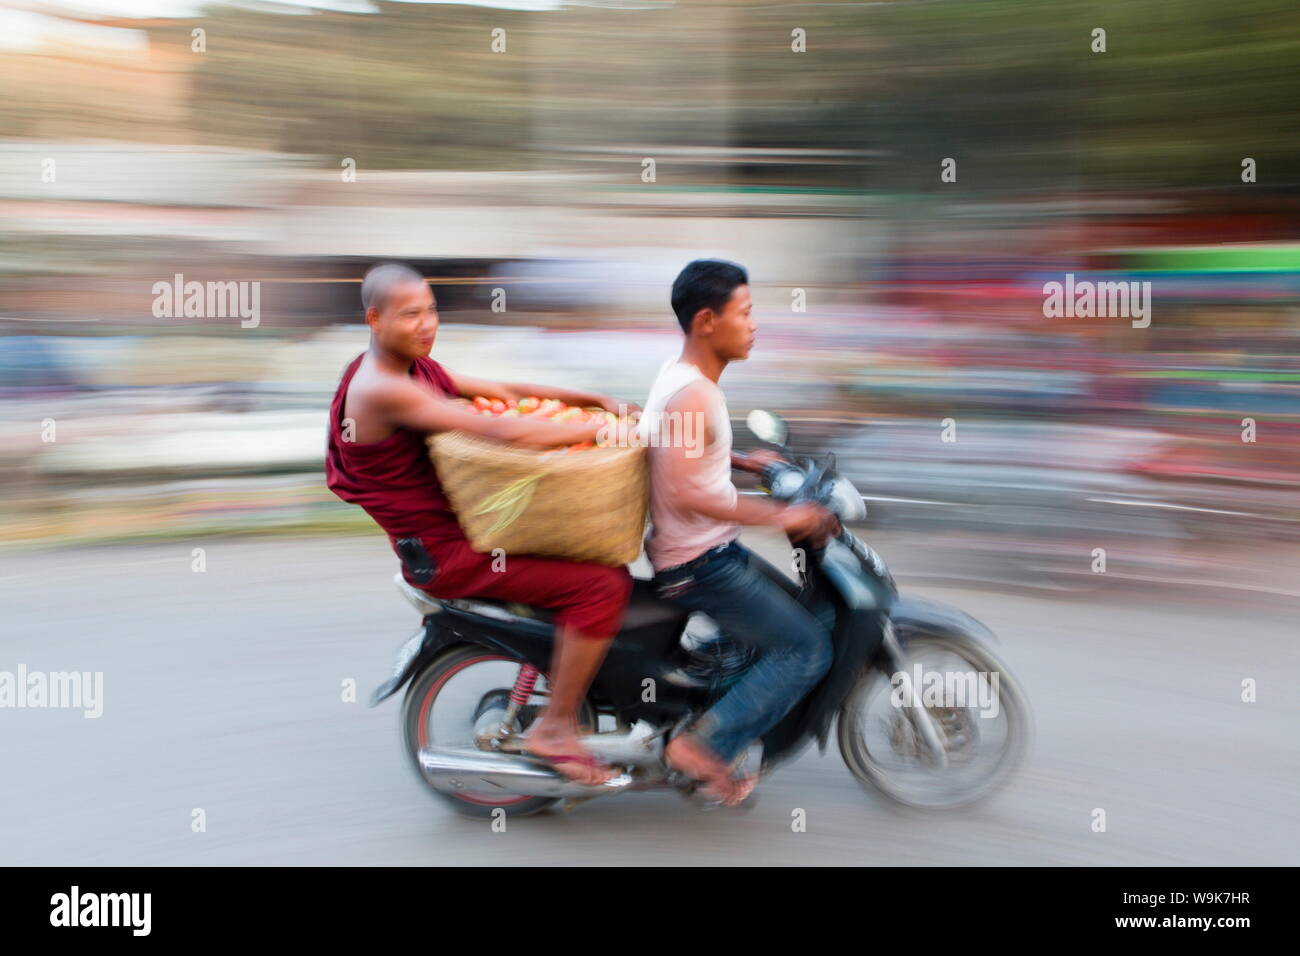 Geschwenkt und verschwommenes Bild erzeugen ein Gefühl von Bewegung, buddhistischer Mönch, sozius und Gemüse auf der Rückseite eines Mopeds, Mandalay, Myanmar Stockfoto